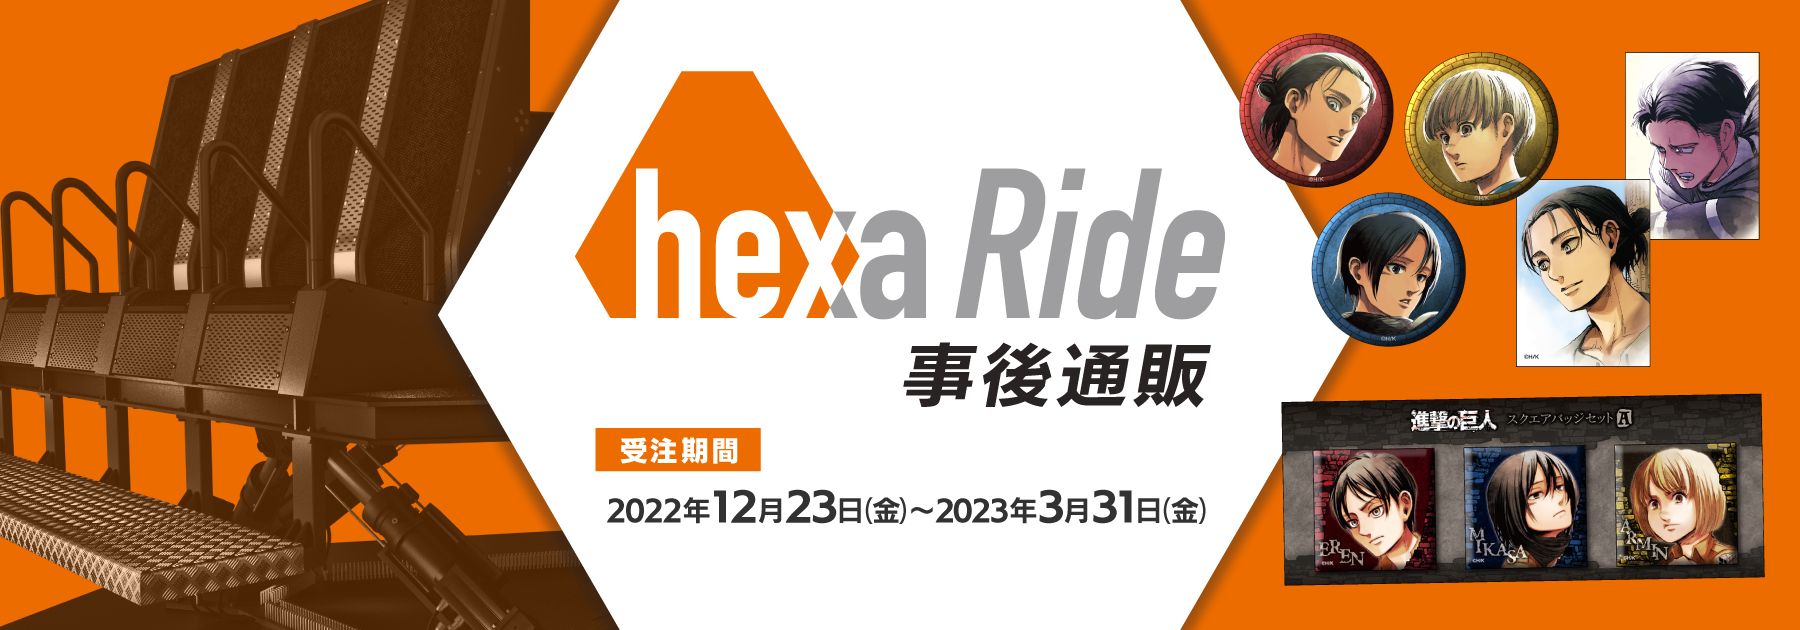 hexa Rideʔ